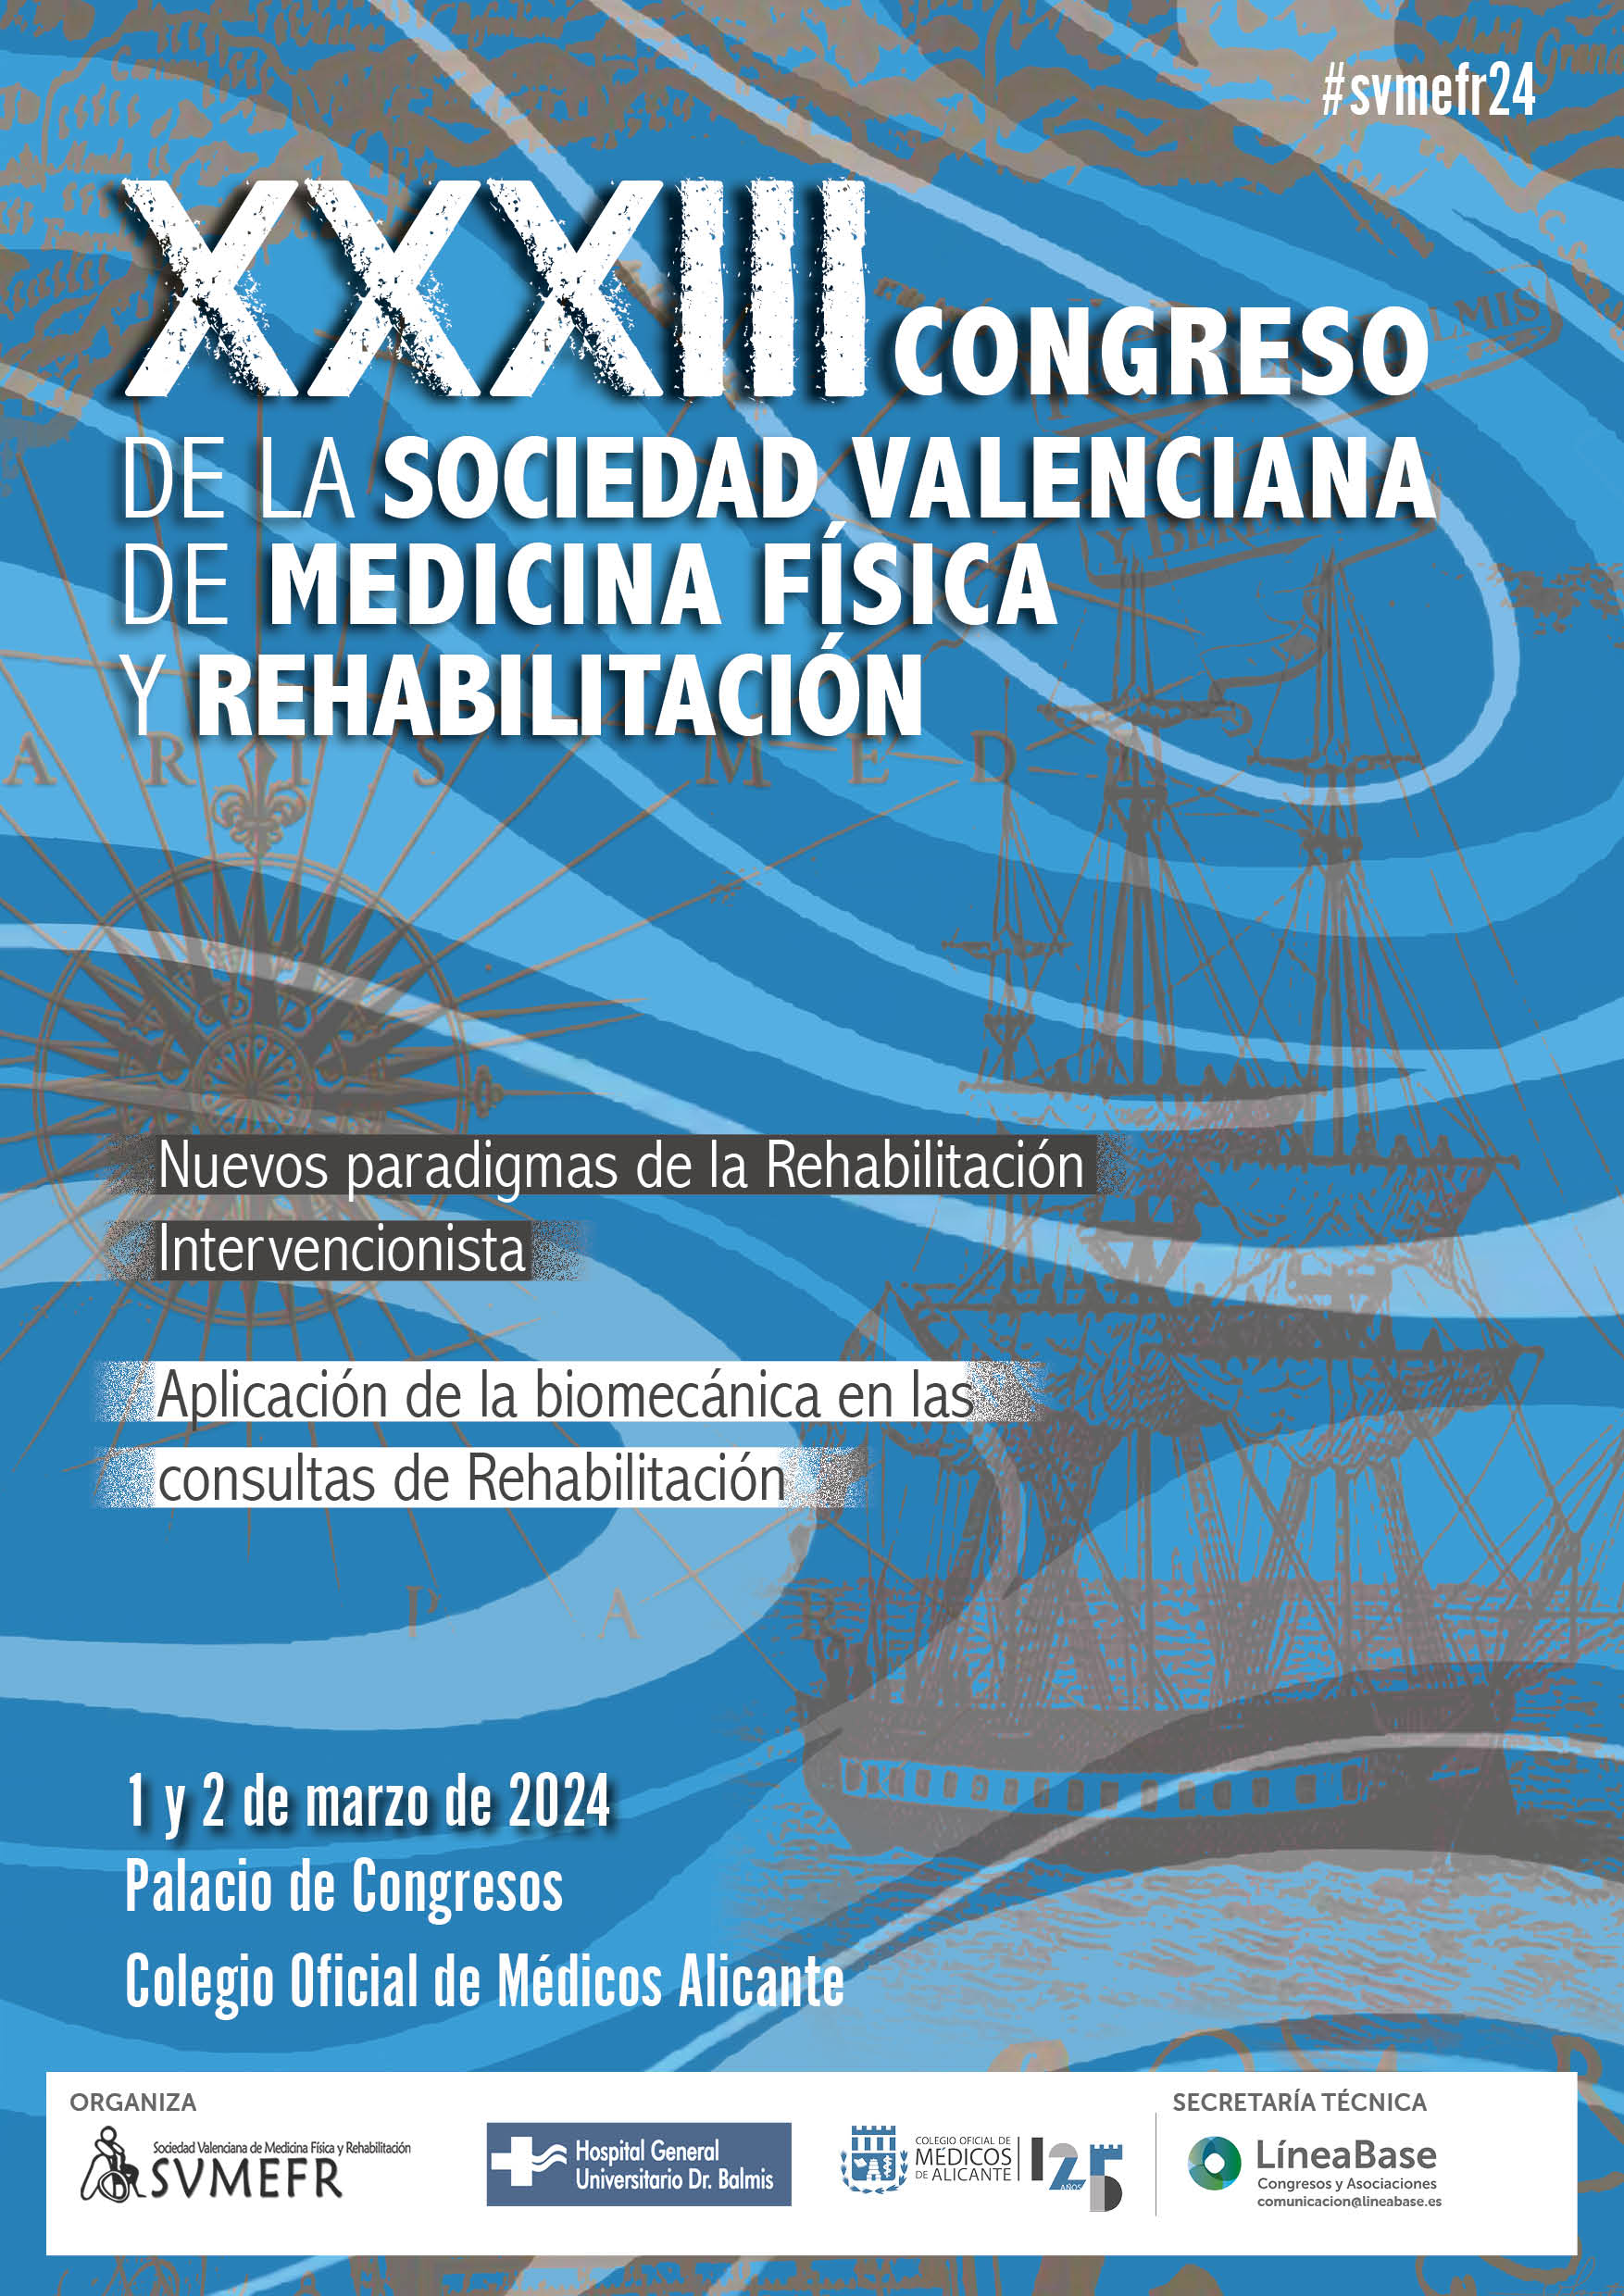 Cartel anunciador del XXXIII Congreso de la Sociedad Valenciana de Medicina Física y Rehabilitación